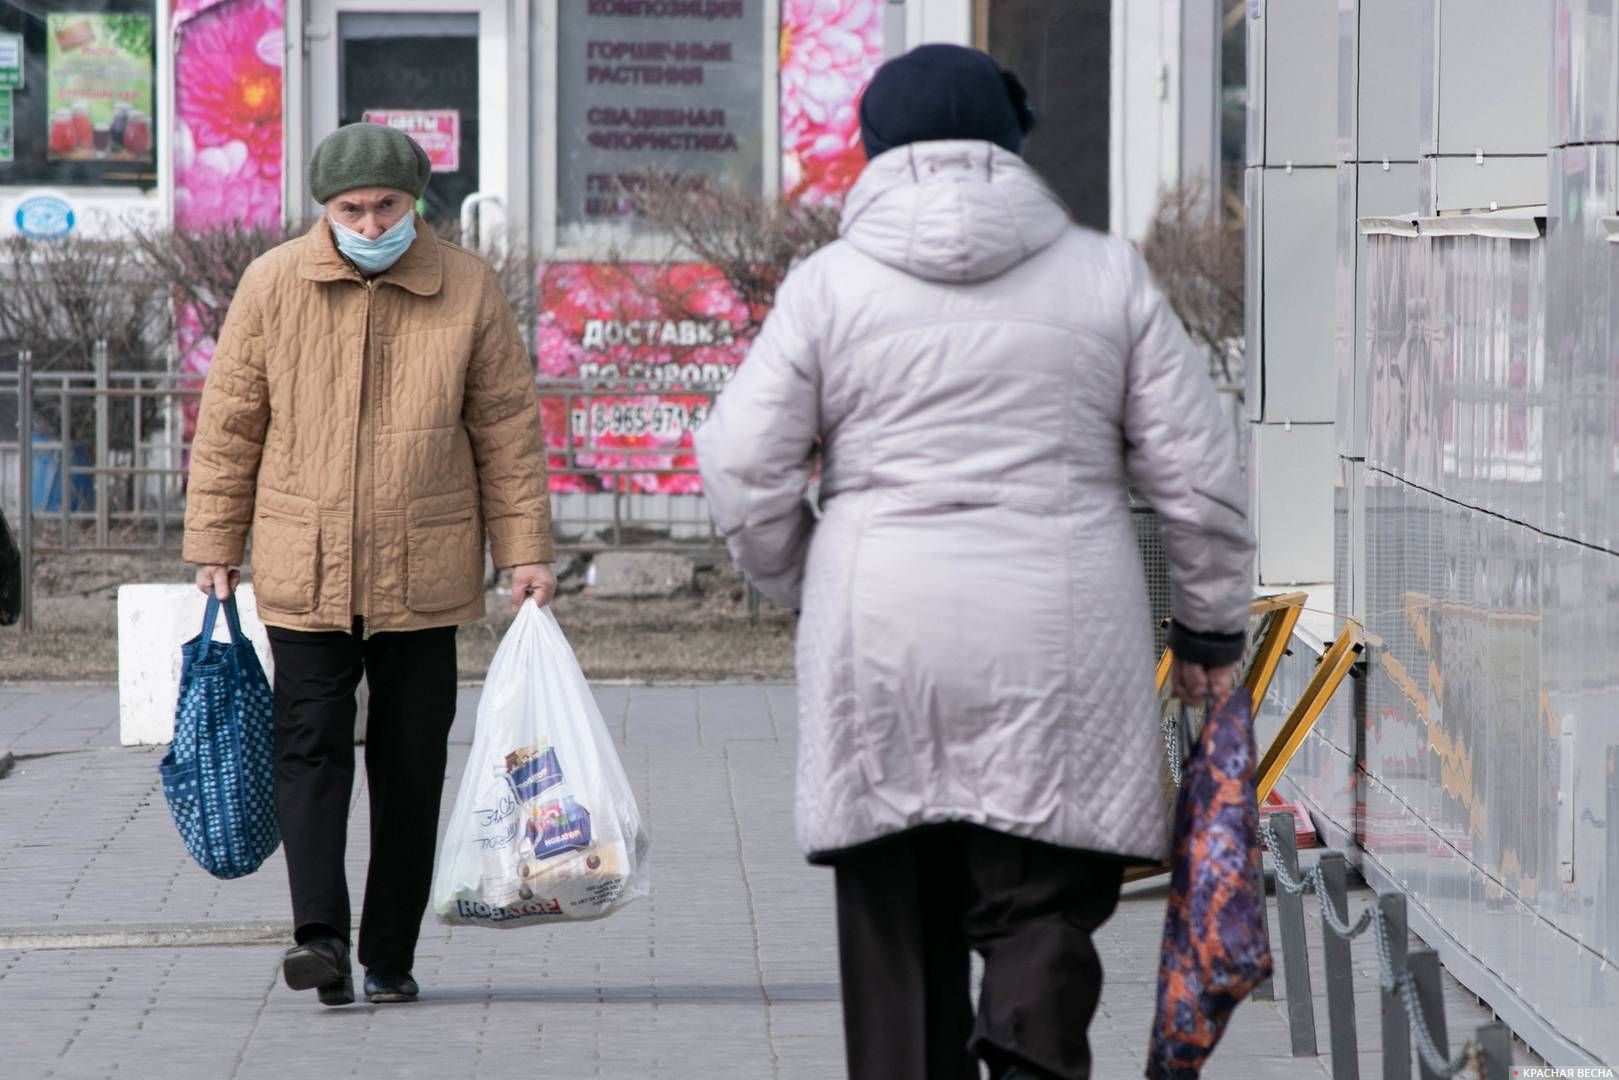 Омск. Многие пожилые люди ходят в масках